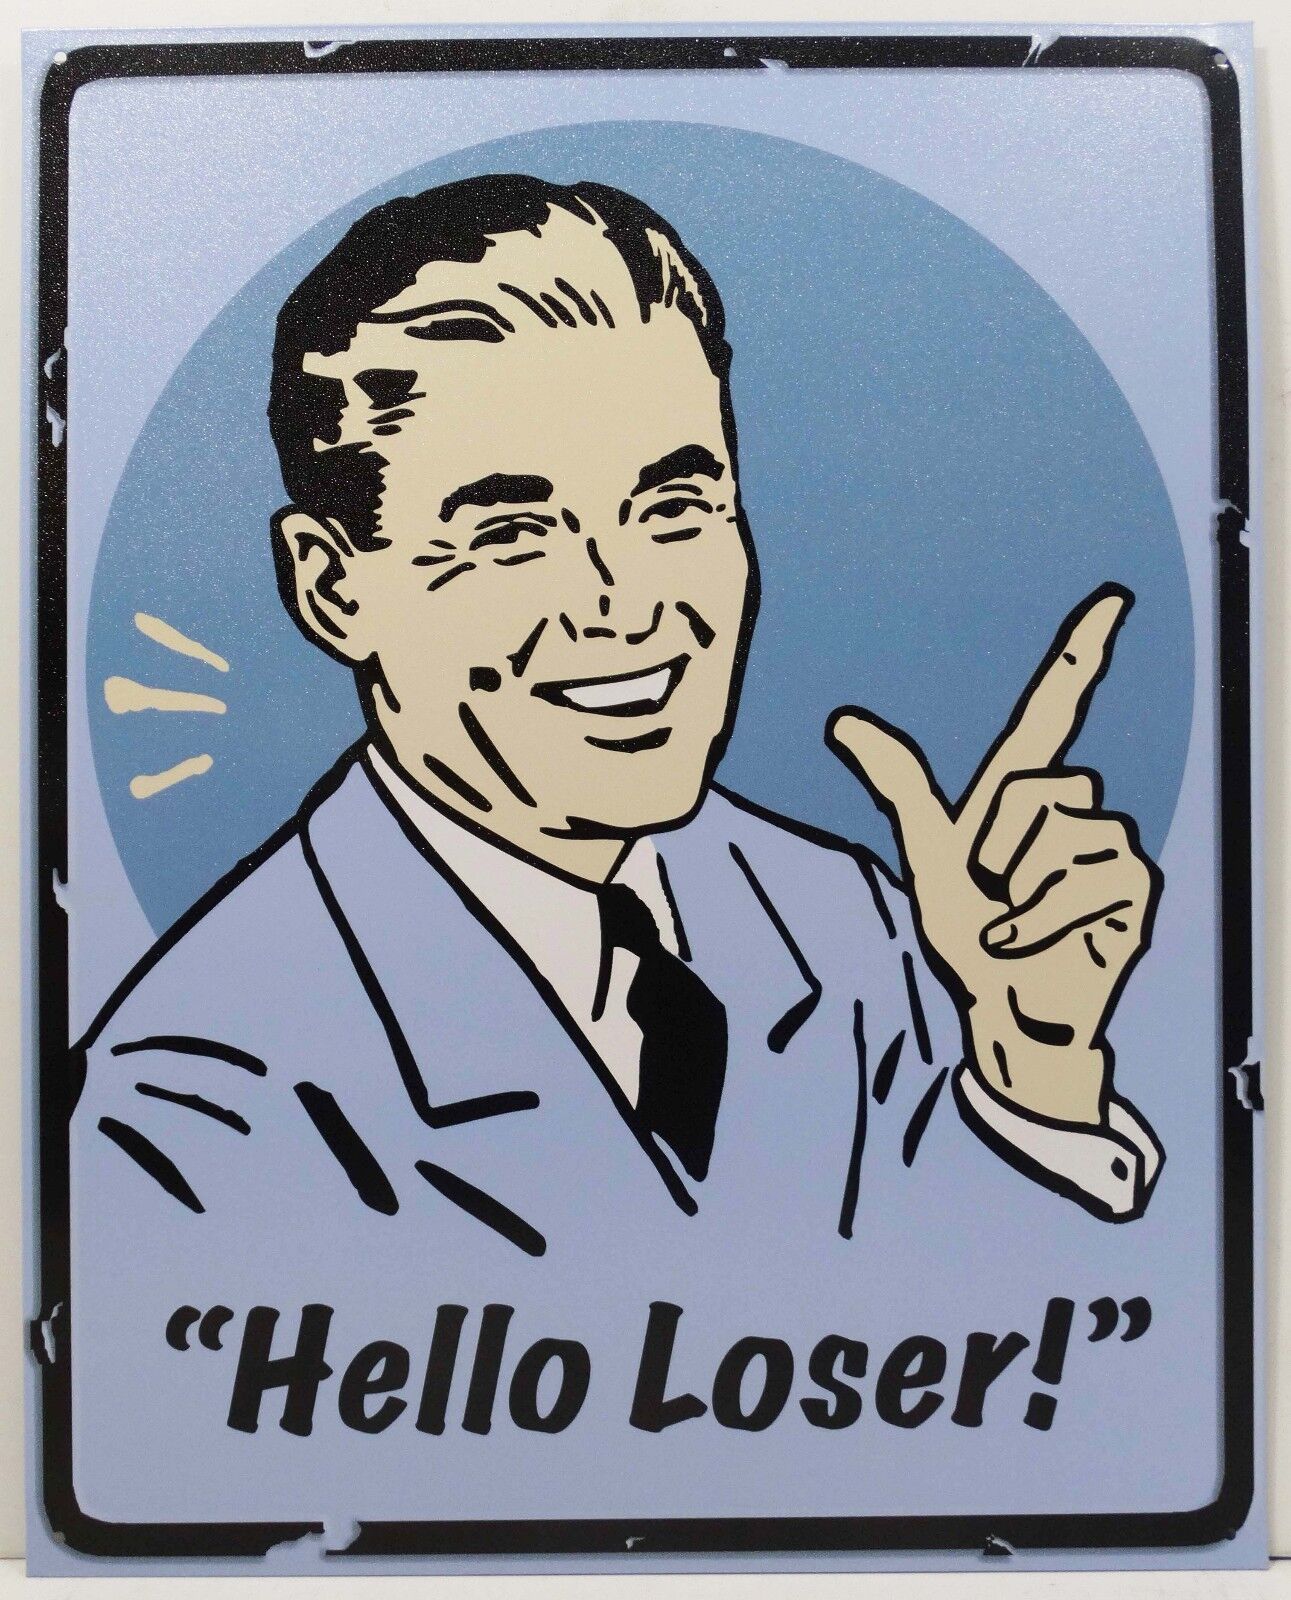 Hello Loser Retro Fifties Man Humor Metal Sign